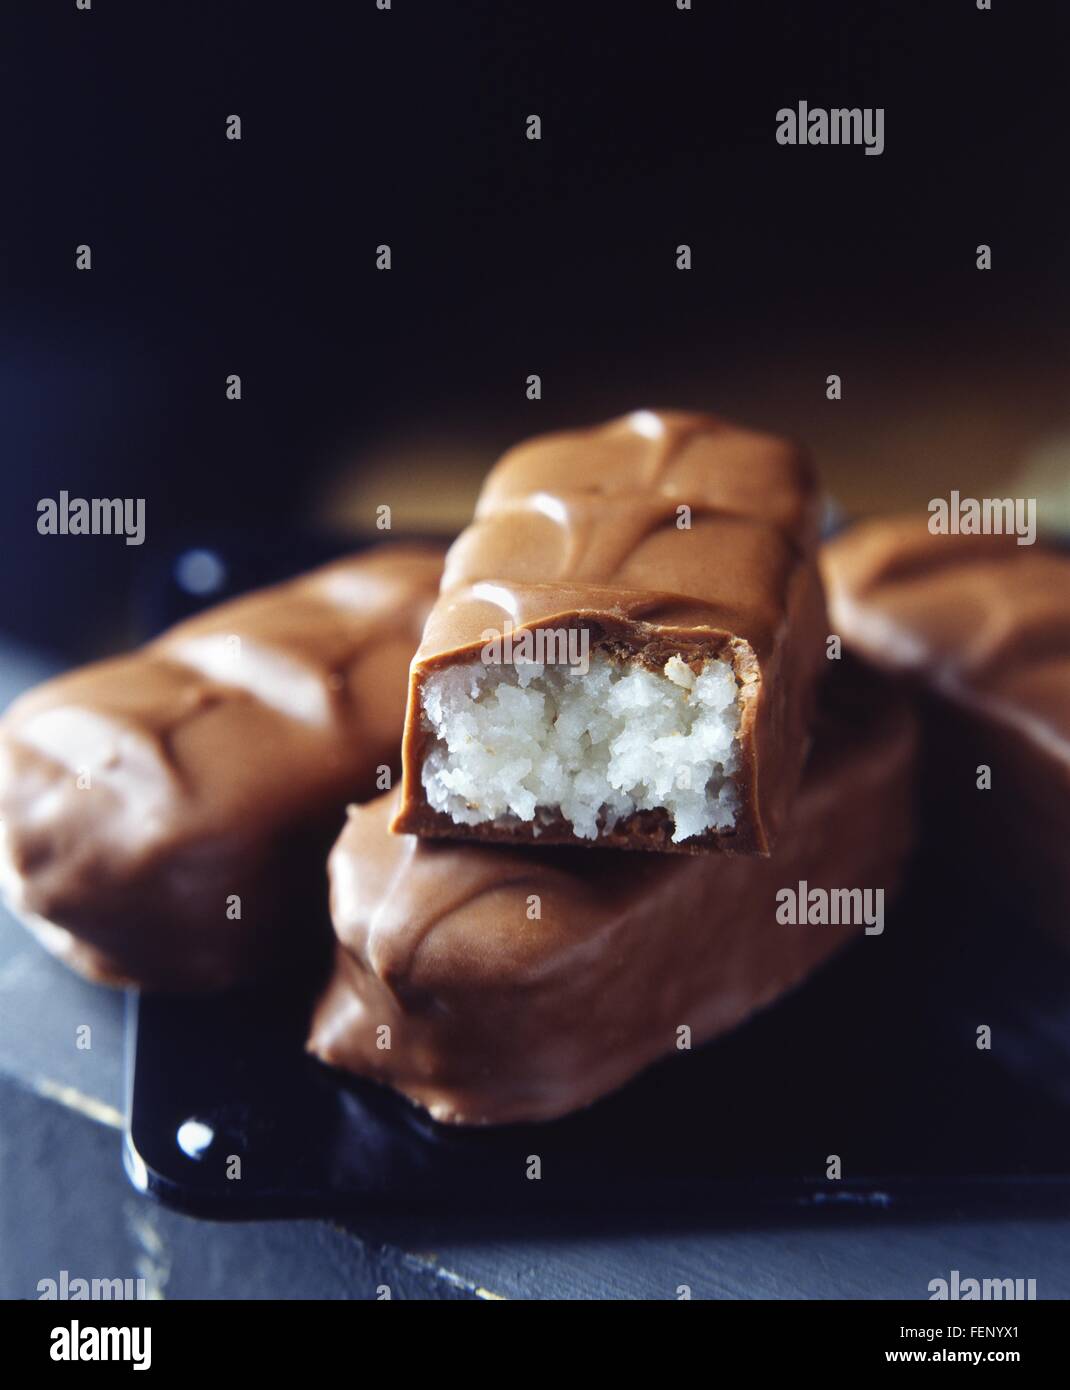 Les barres de chocolat lait empilées avec remplissage de coco Banque D'Images